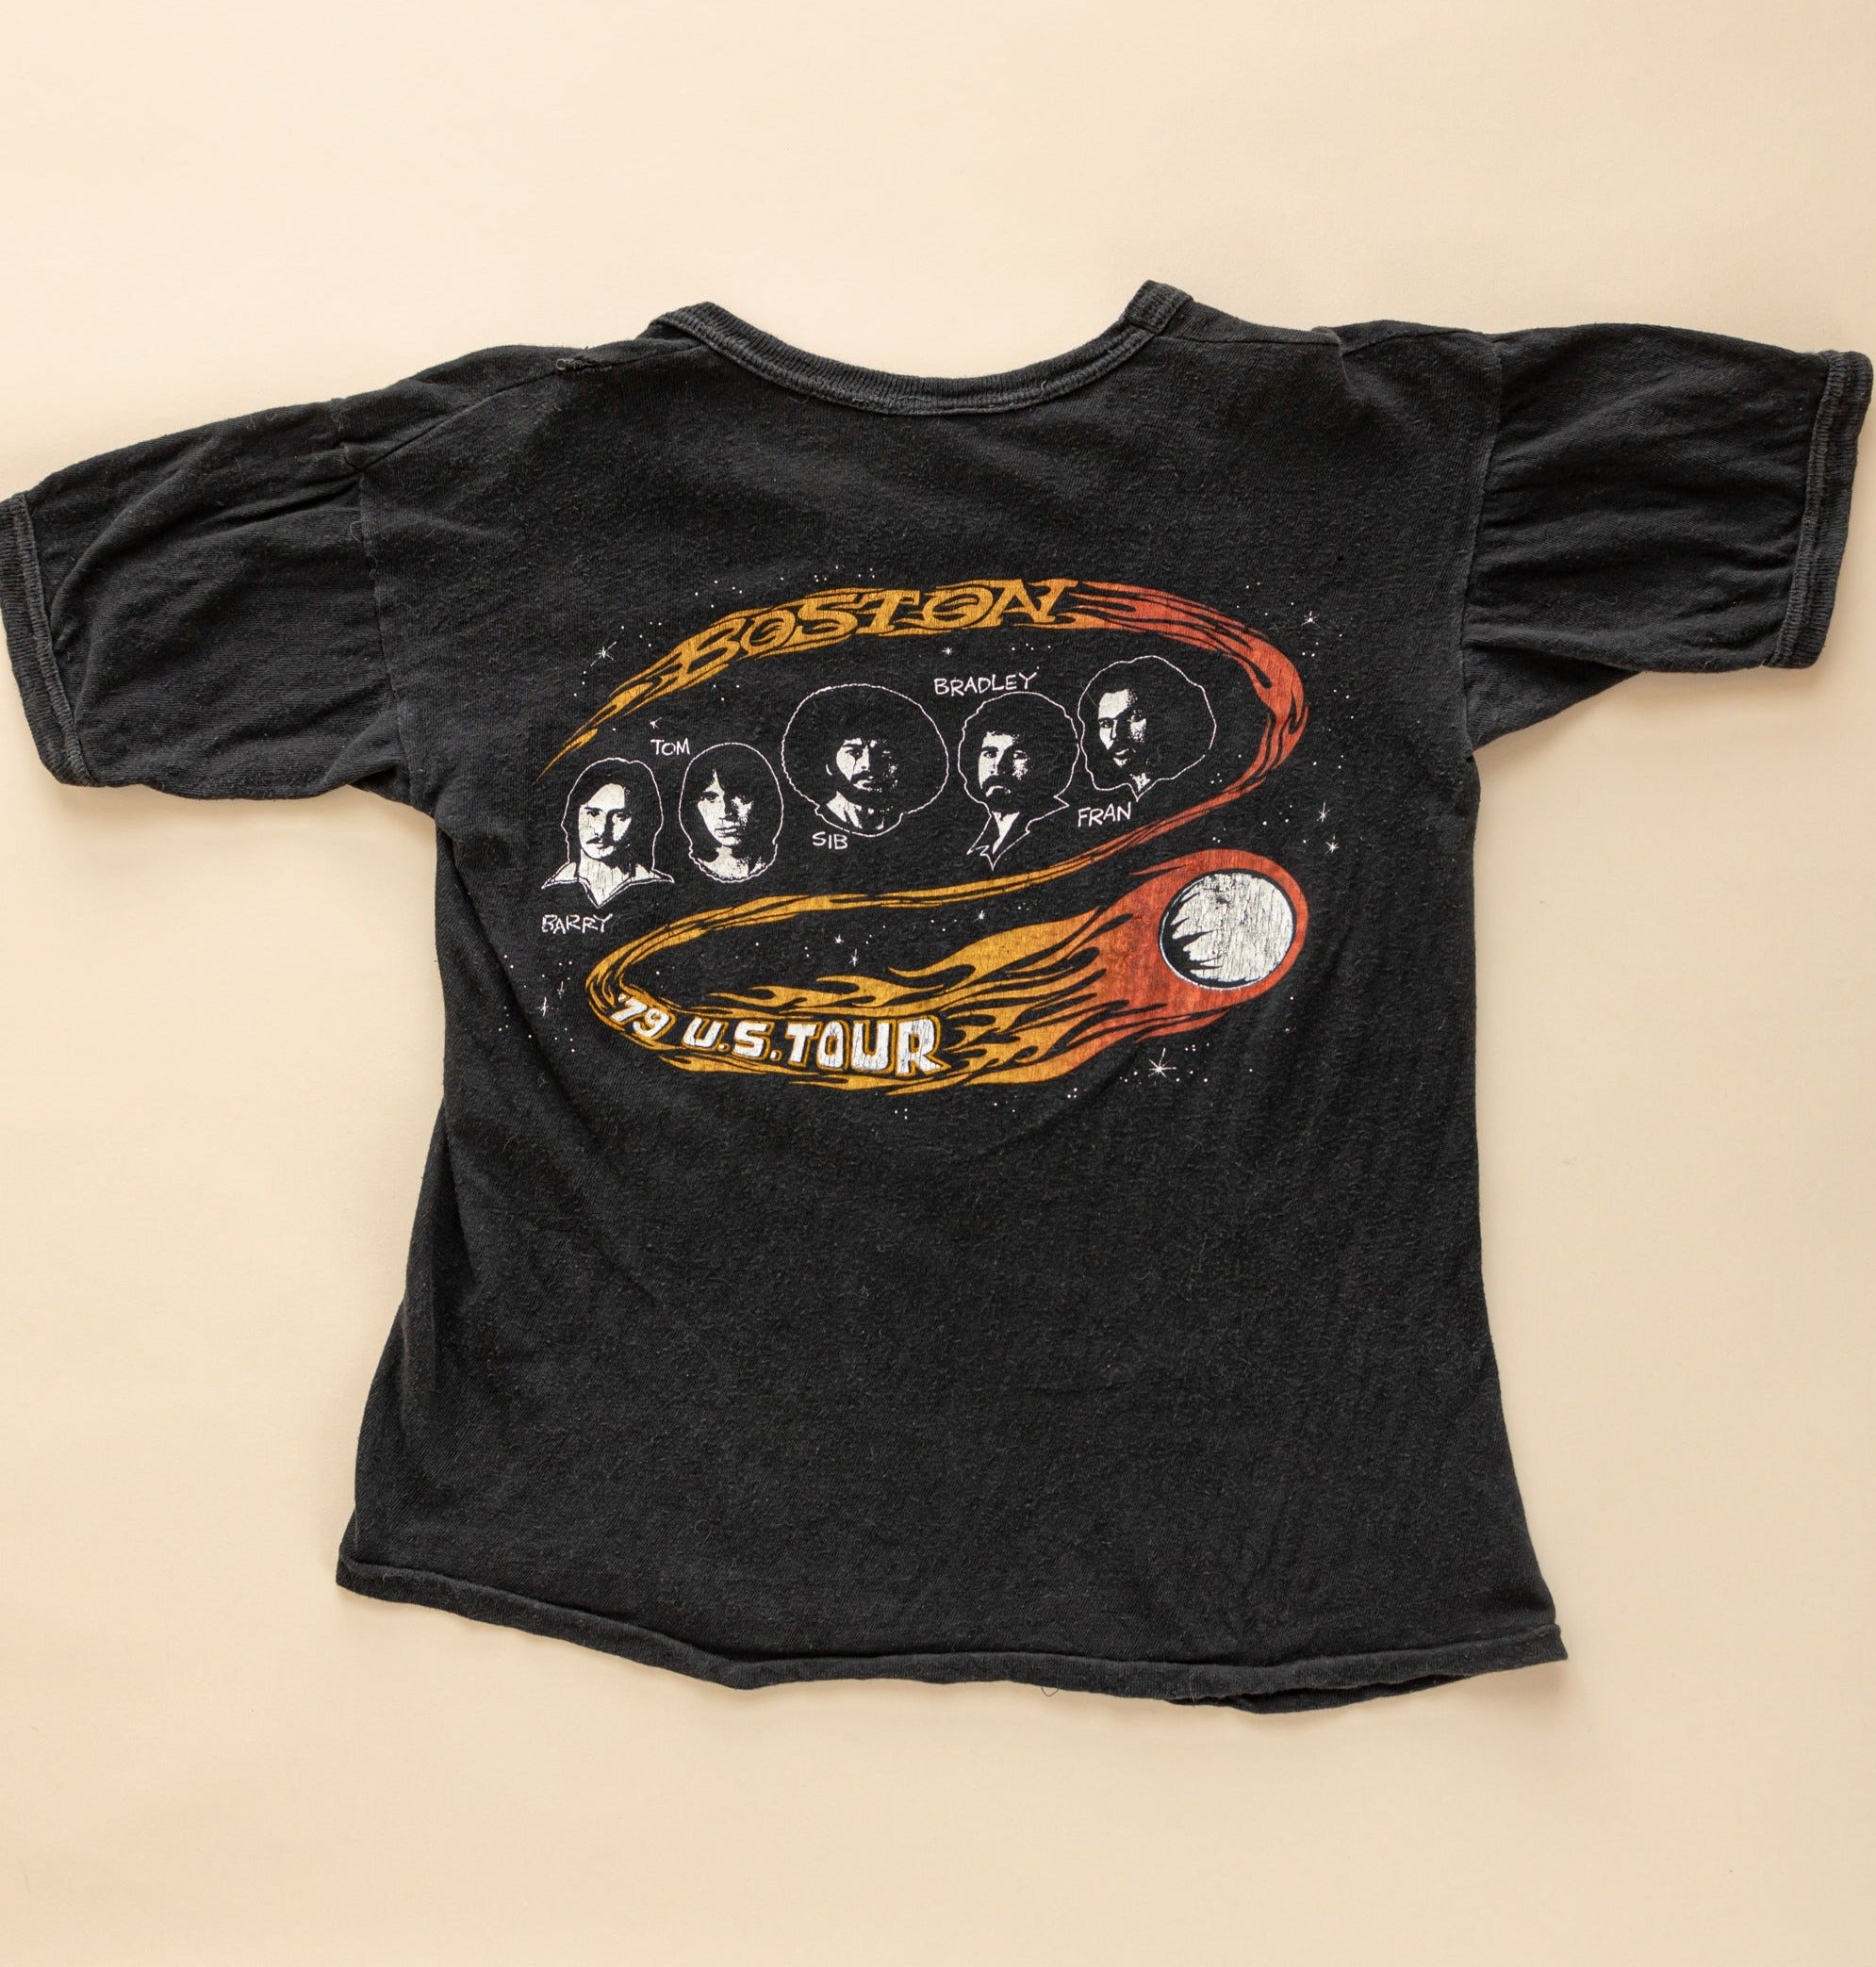 Vintage 1970's Boston T-shirt| 1979 U.S. Tour t-shirt| Don't Look